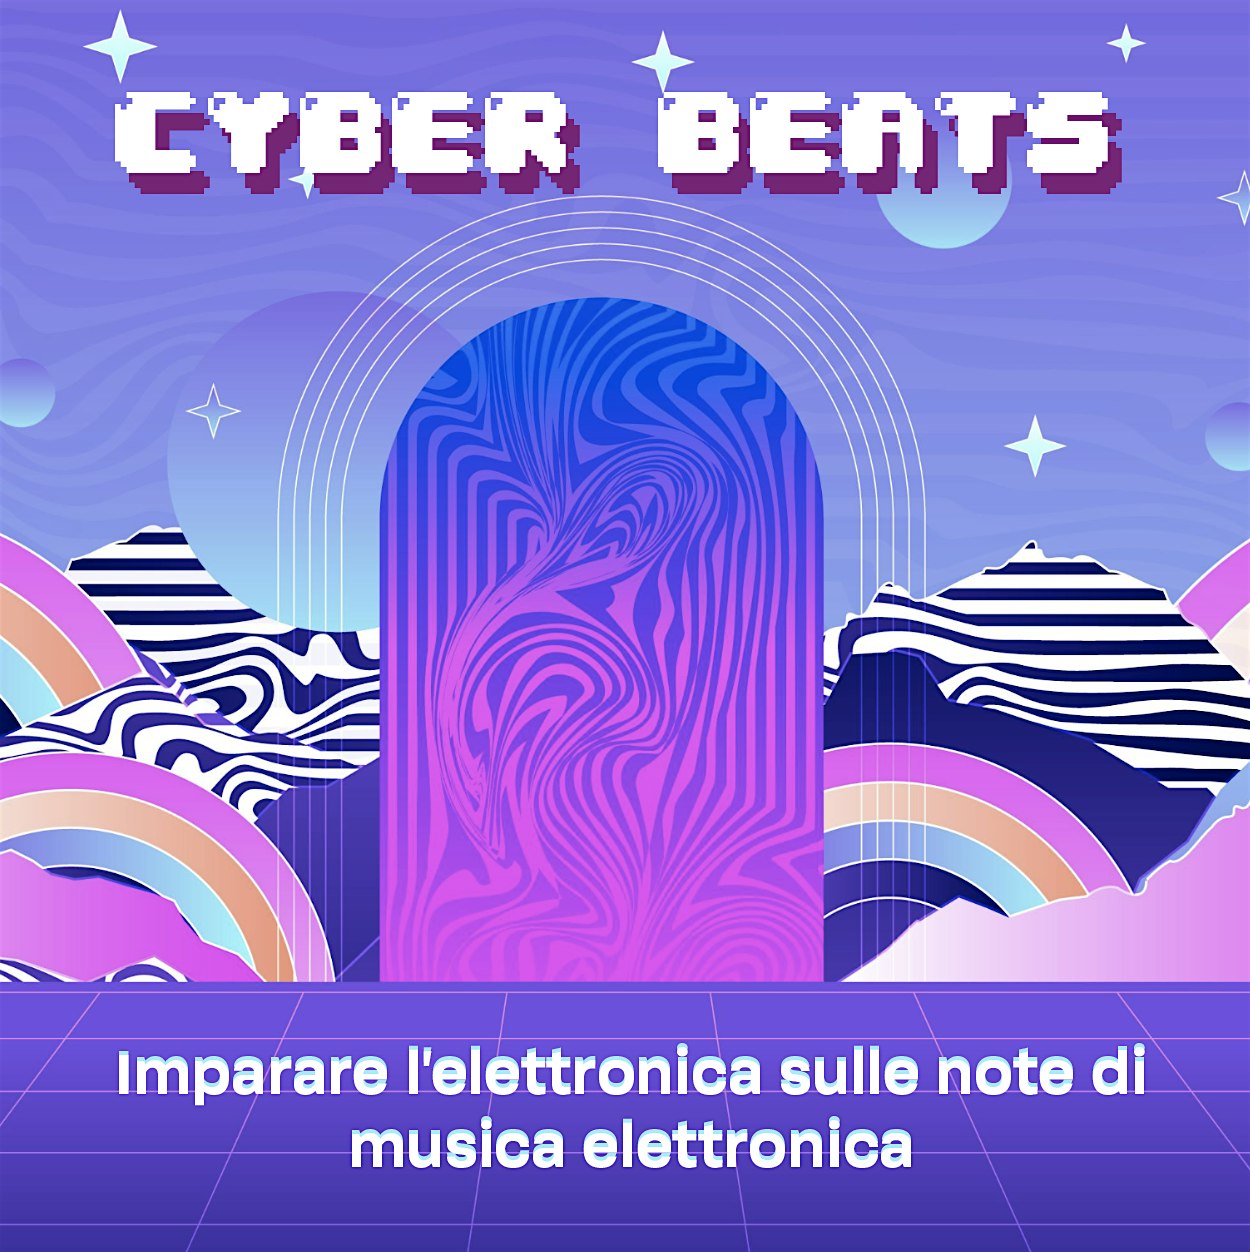 Cyber beats: imparare l’elettronica sulle note di musica elettronica